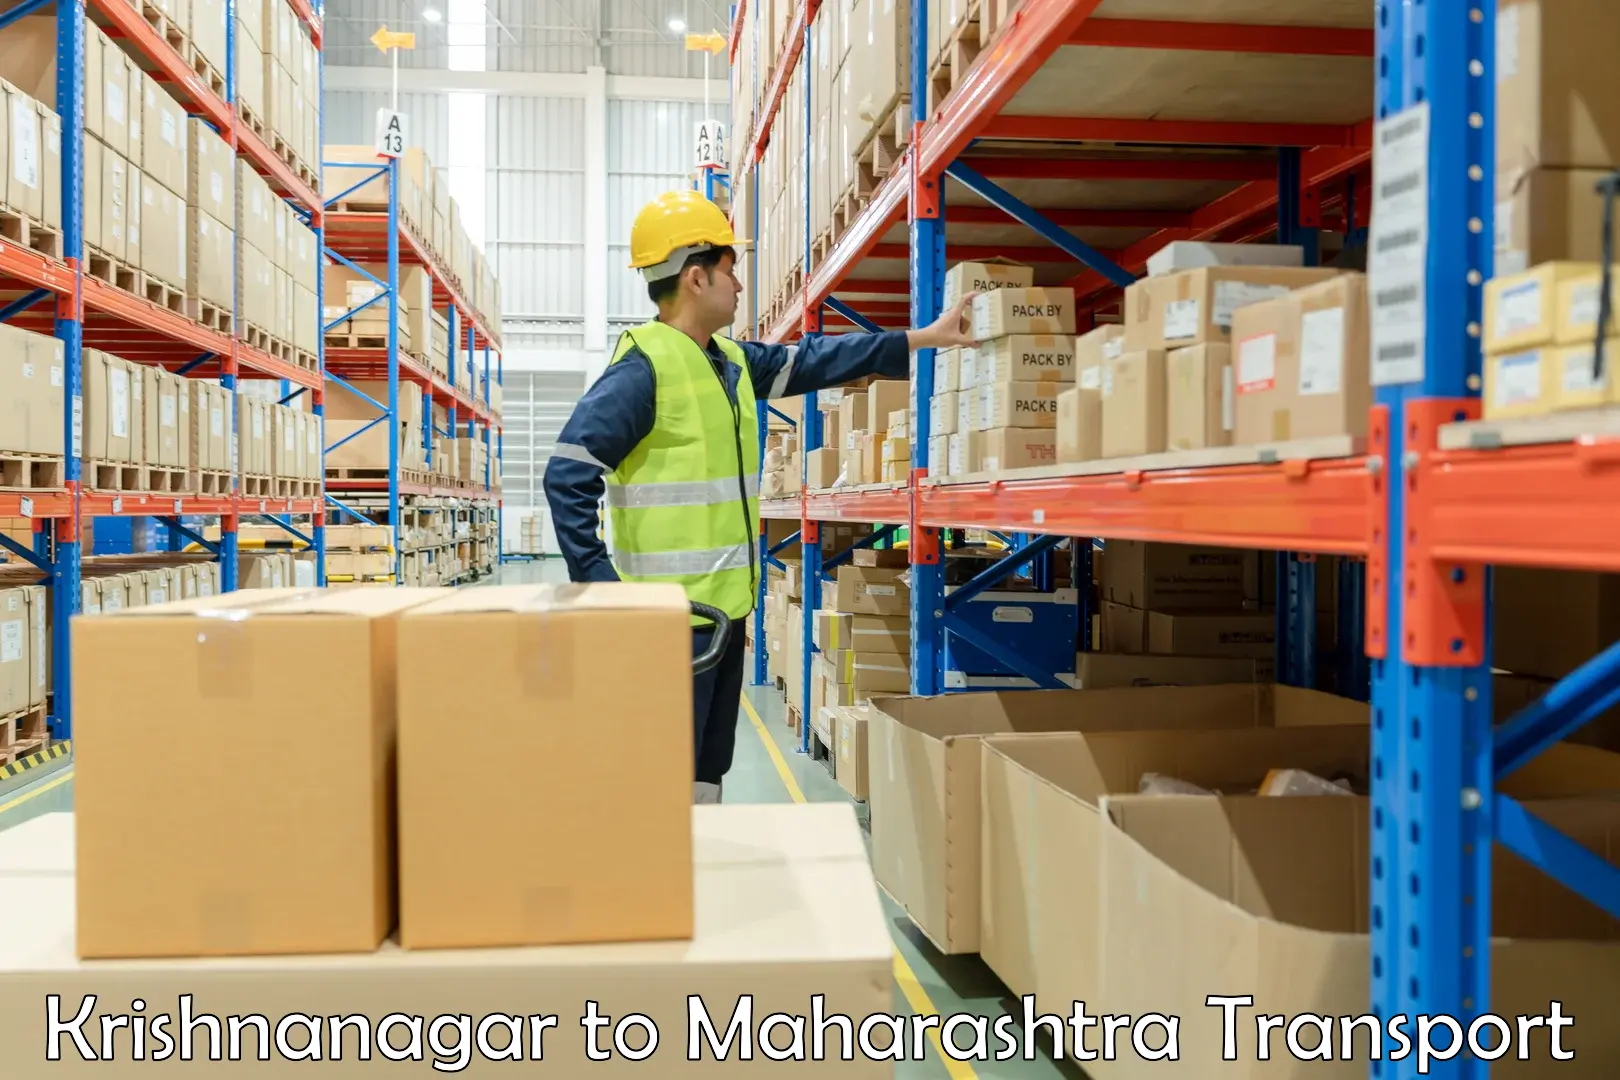 Lorry transport service Krishnanagar to Kandhar